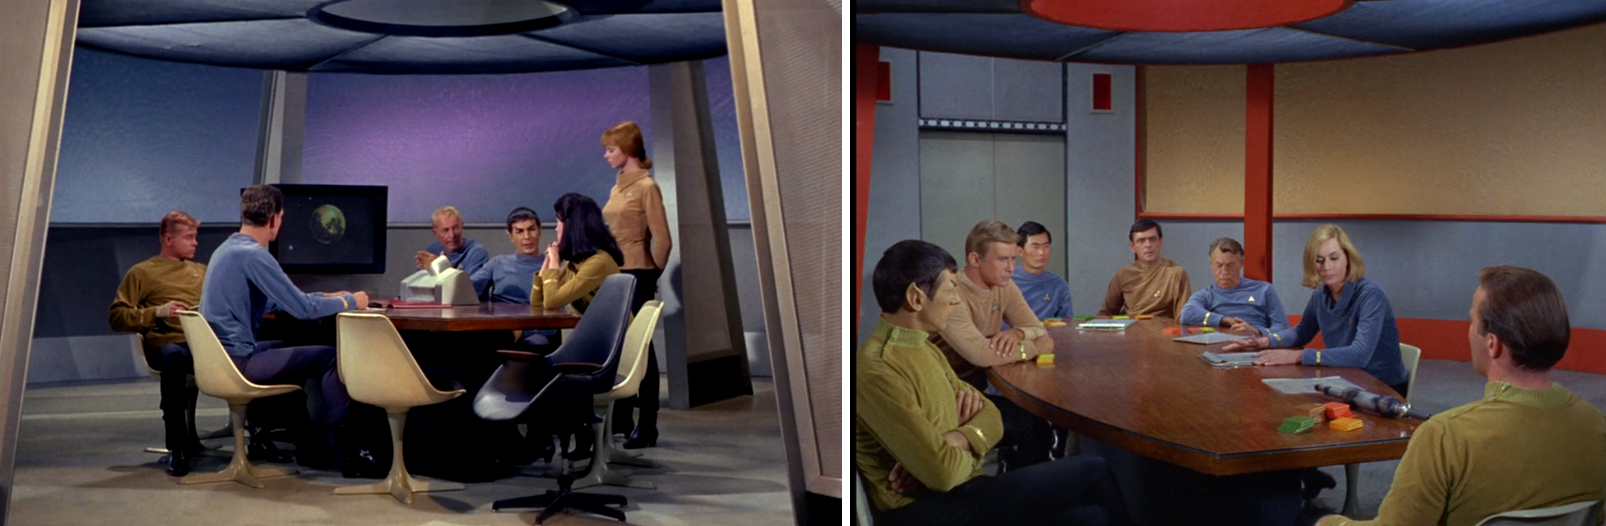 Die runde Form des Konferenzraums entspricht dem Set aus den beiden Pilotepisoden "The Cage" und "Where No Man Has Gone Before" aus dem Jahr 1965. In "The Original Series" wurde später ein größerer Konferenzraum verwendet (Fotos: CBS).